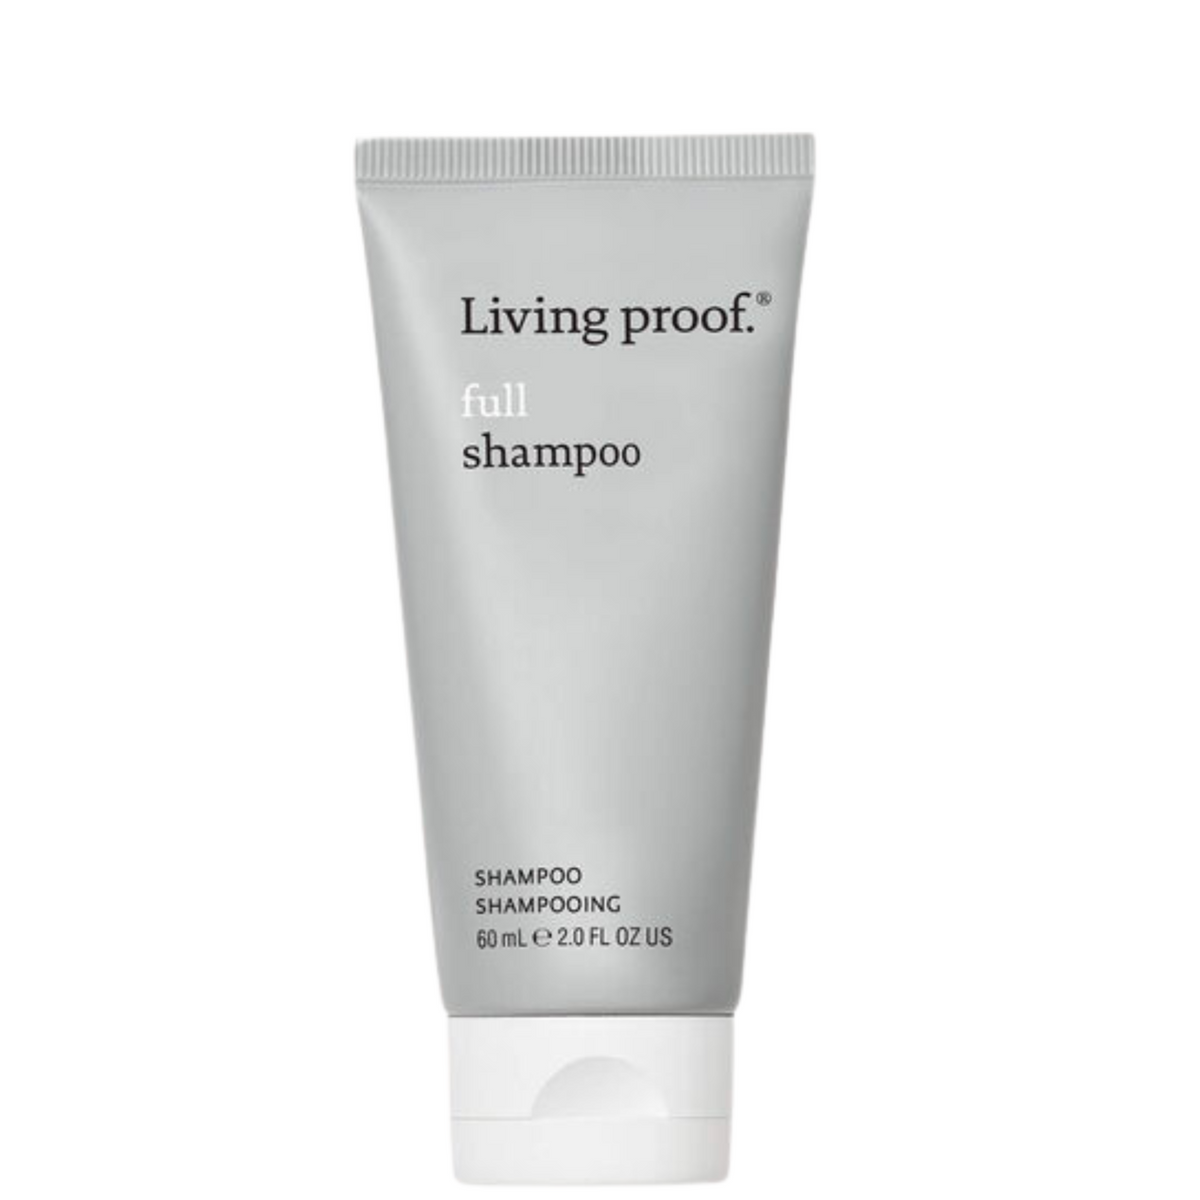 Living Proof® Full Shampoo, 2 oz / 60 mL